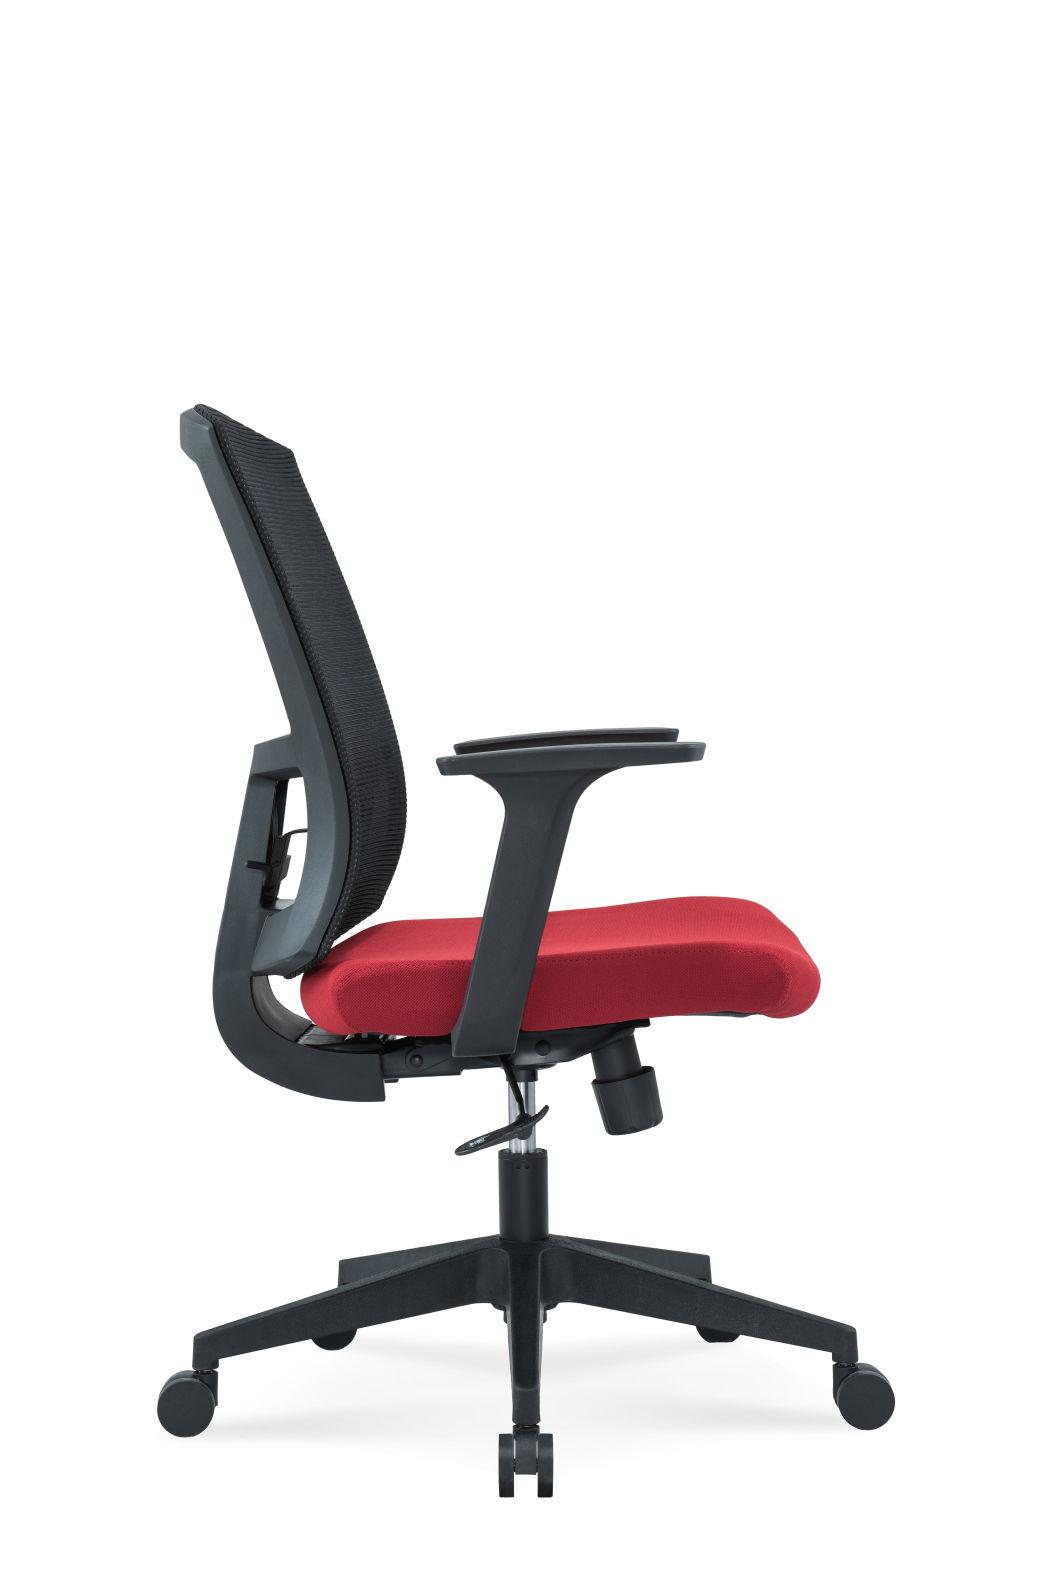 Medium Back Swivel Staff Management Lumbar Support and Headrest Modern Fabric Office Chair